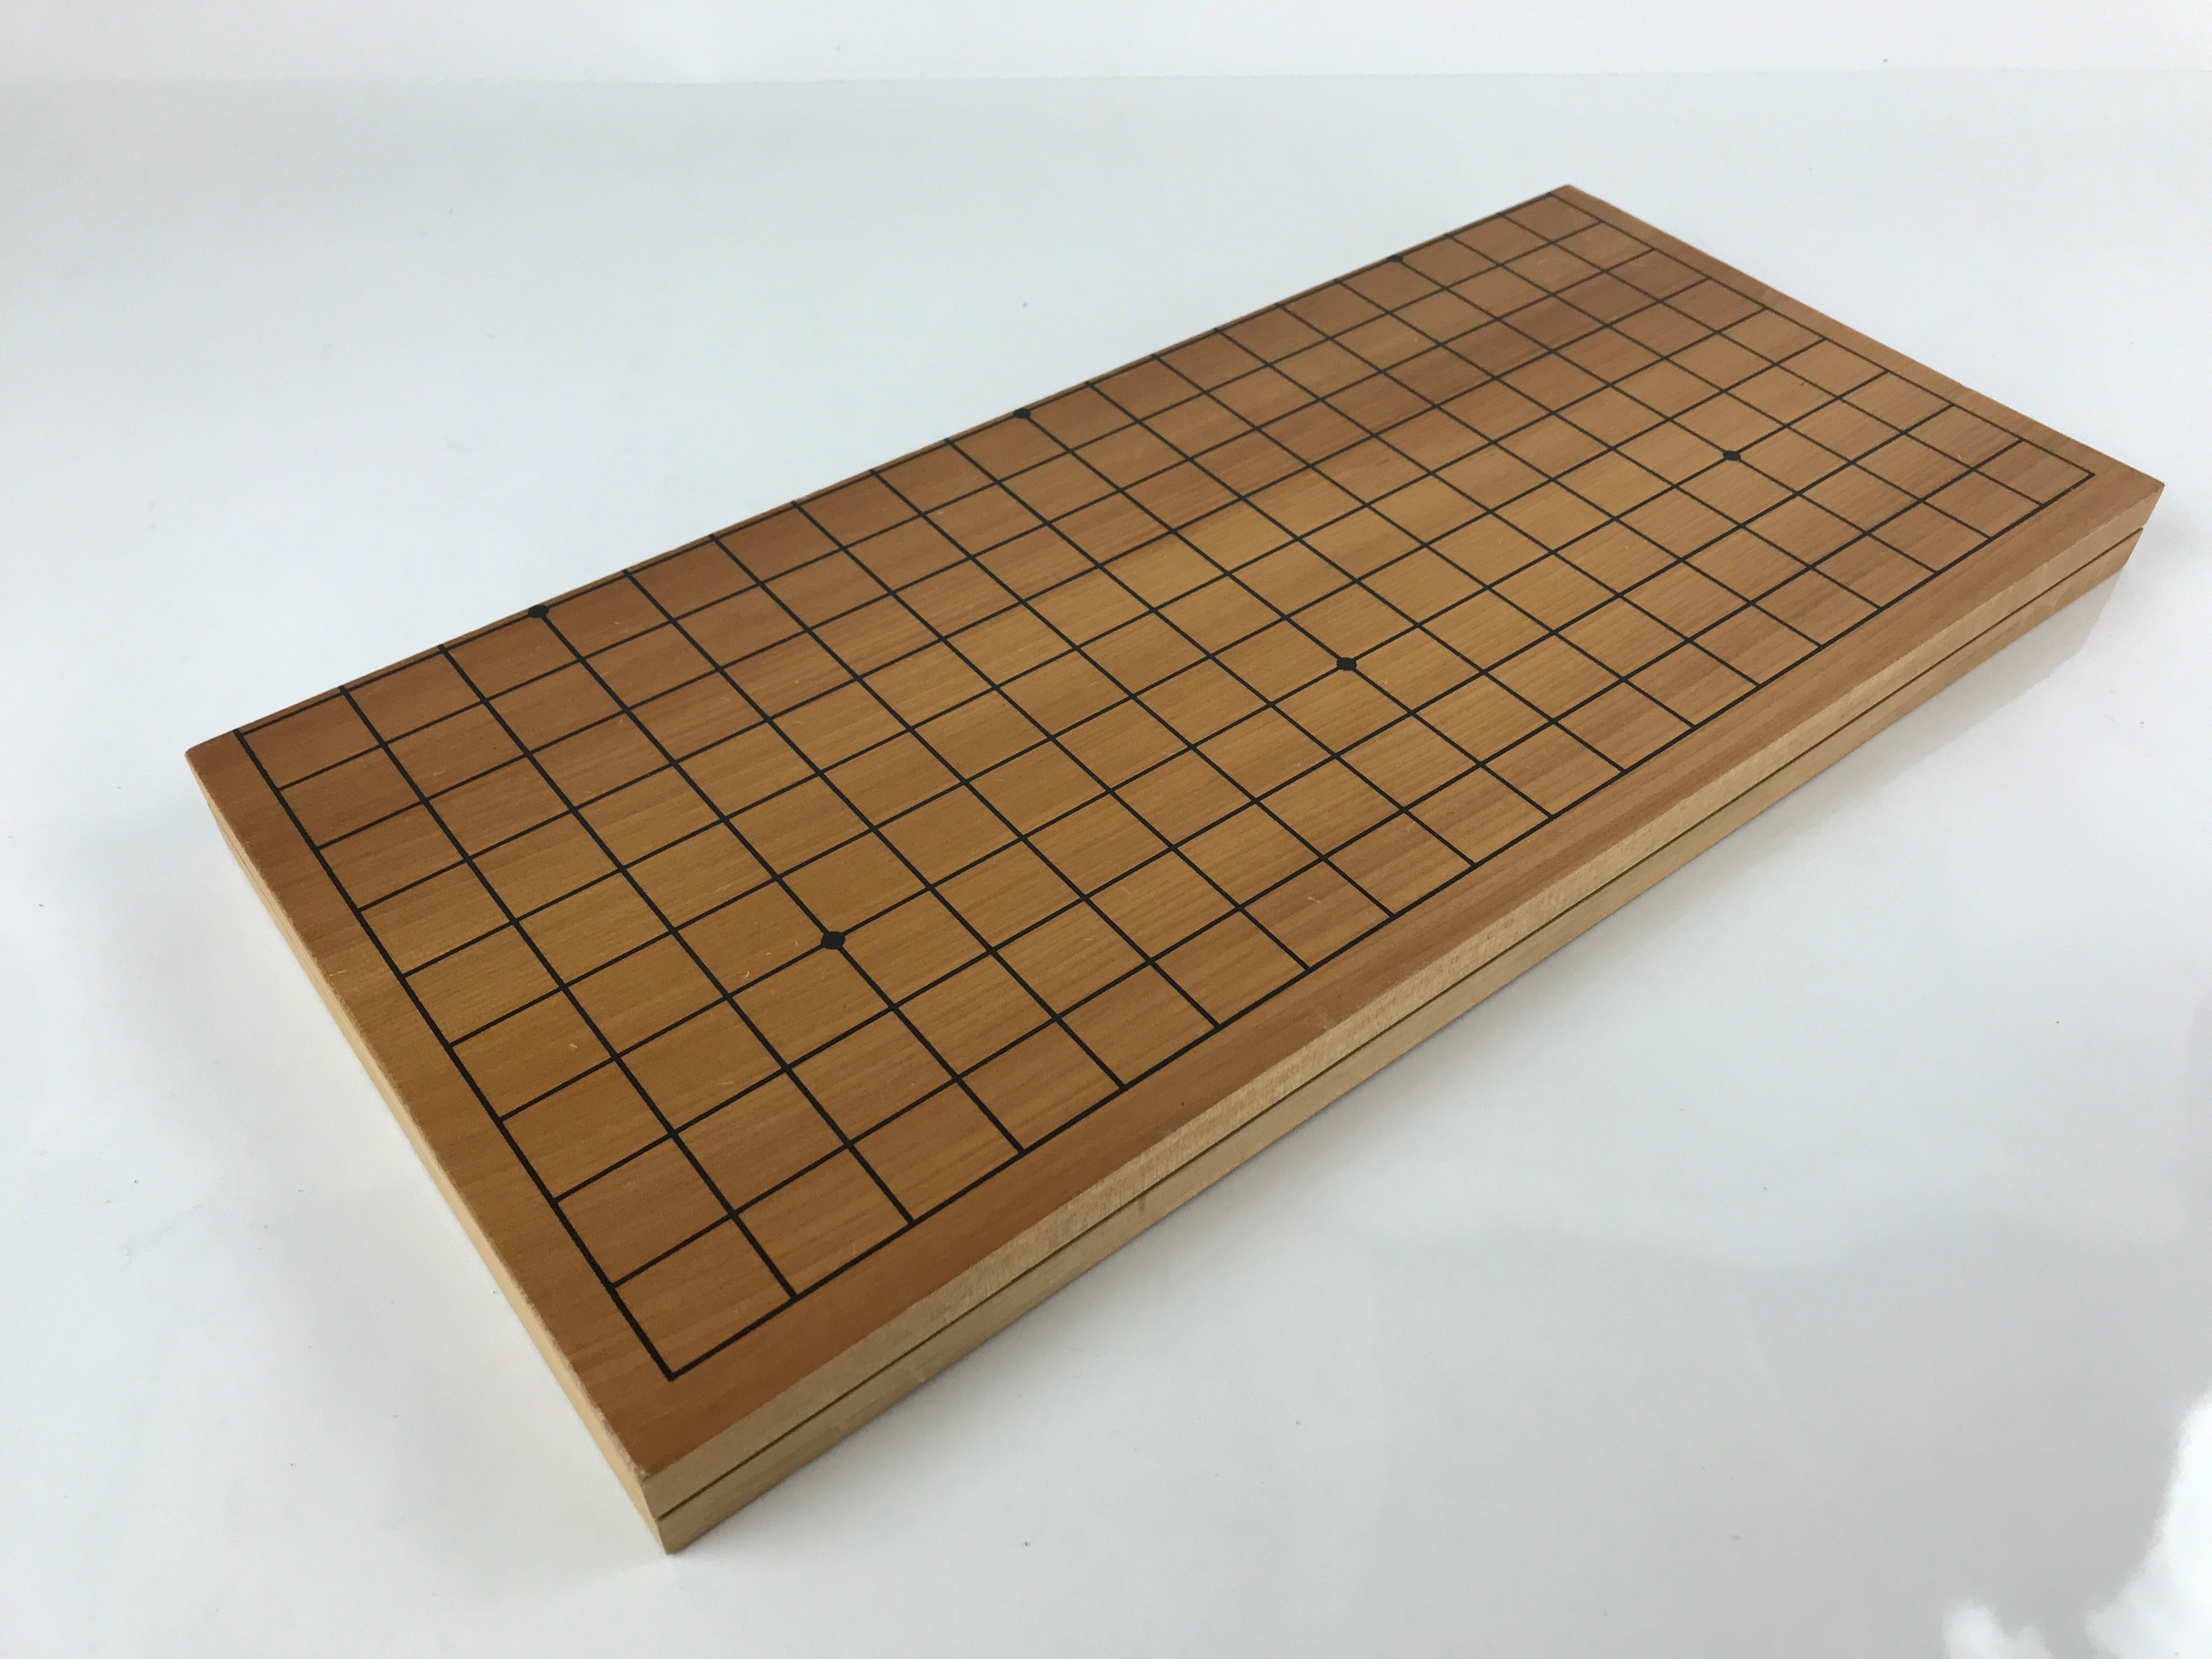 Japanese Wood Go Board Vtg Game Table Folding Goban Portable Igo 19X19 Grid GB93